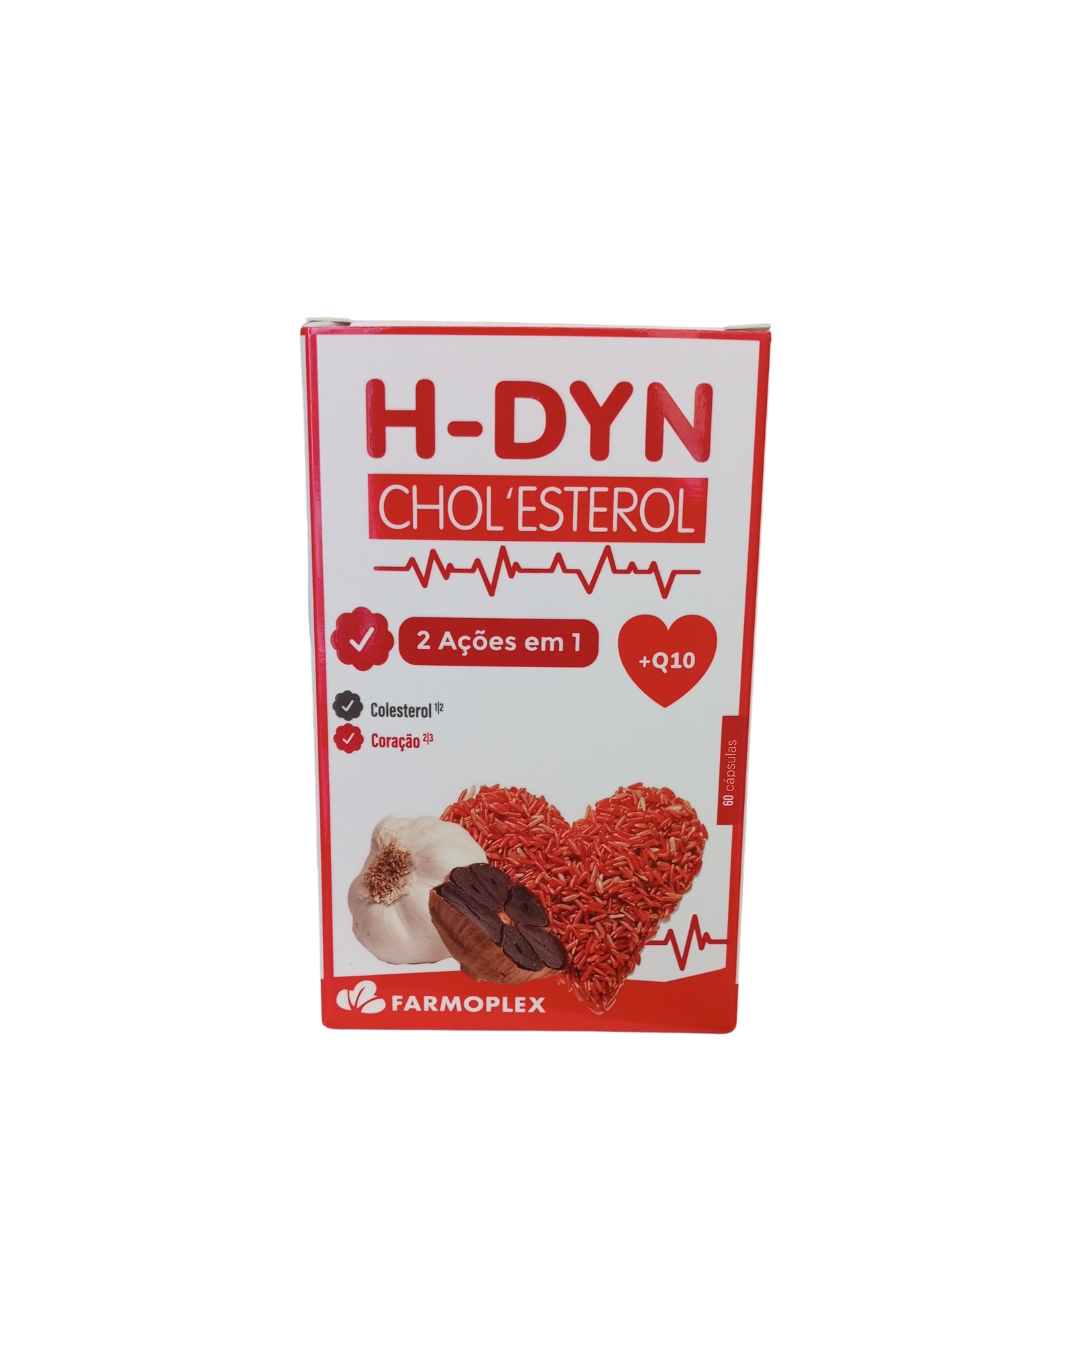 H-Dyn Cholesterol 60 cáps. - Farmoplex